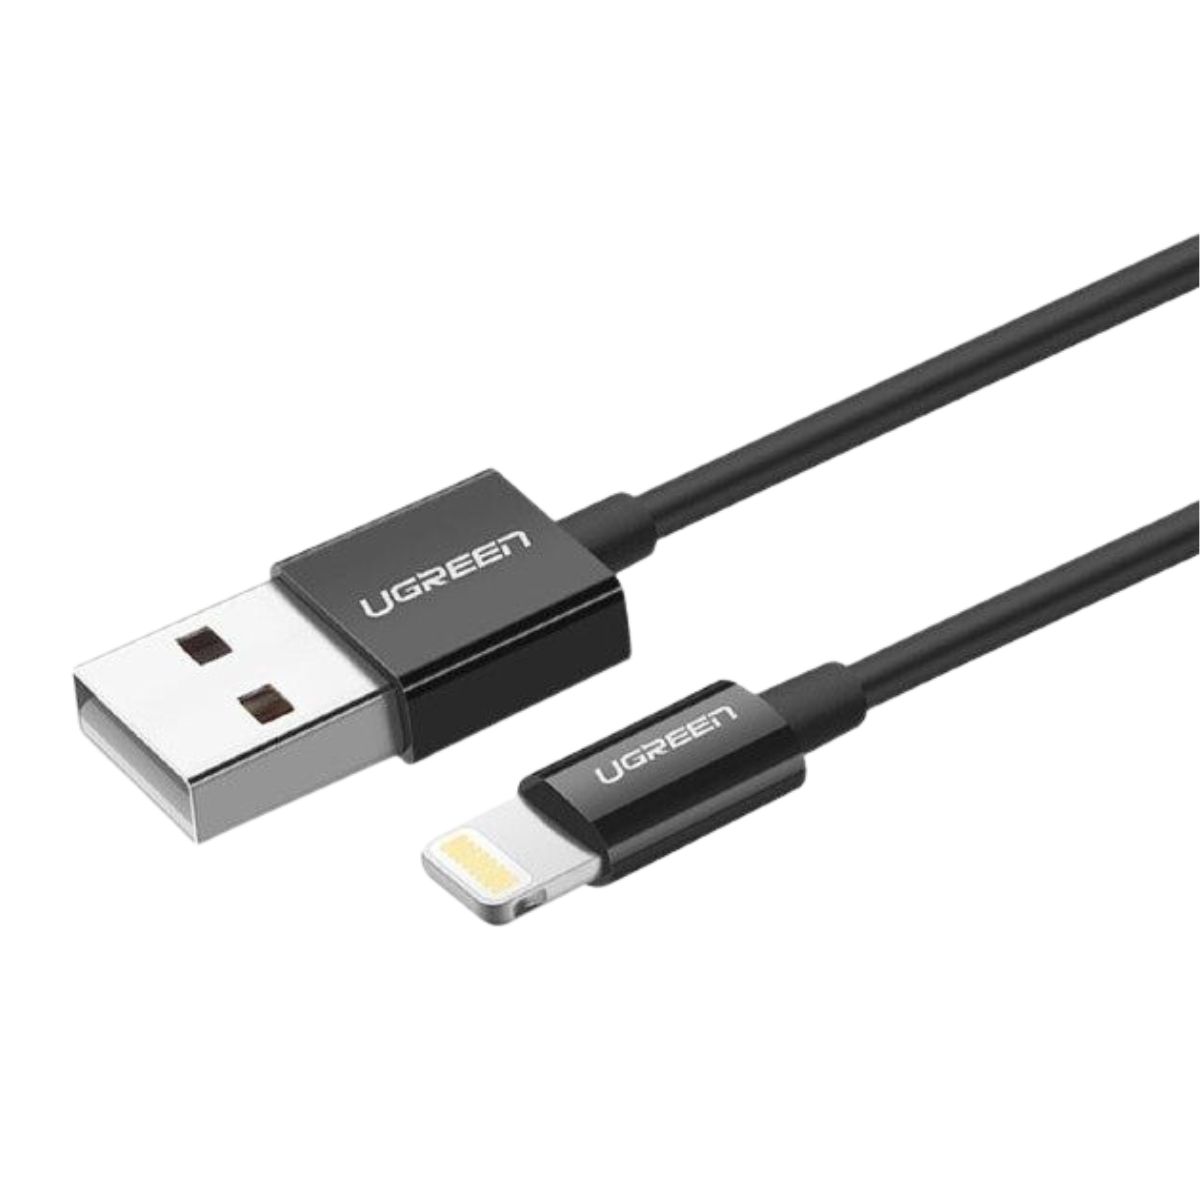 Cáp sạc nhanh 2m USB-A sang Lightning Ugreen US155, 80823 màu đen, hỗ trợ đầu ra 5V/2.4A, Tốc độ truyền 480Mbps